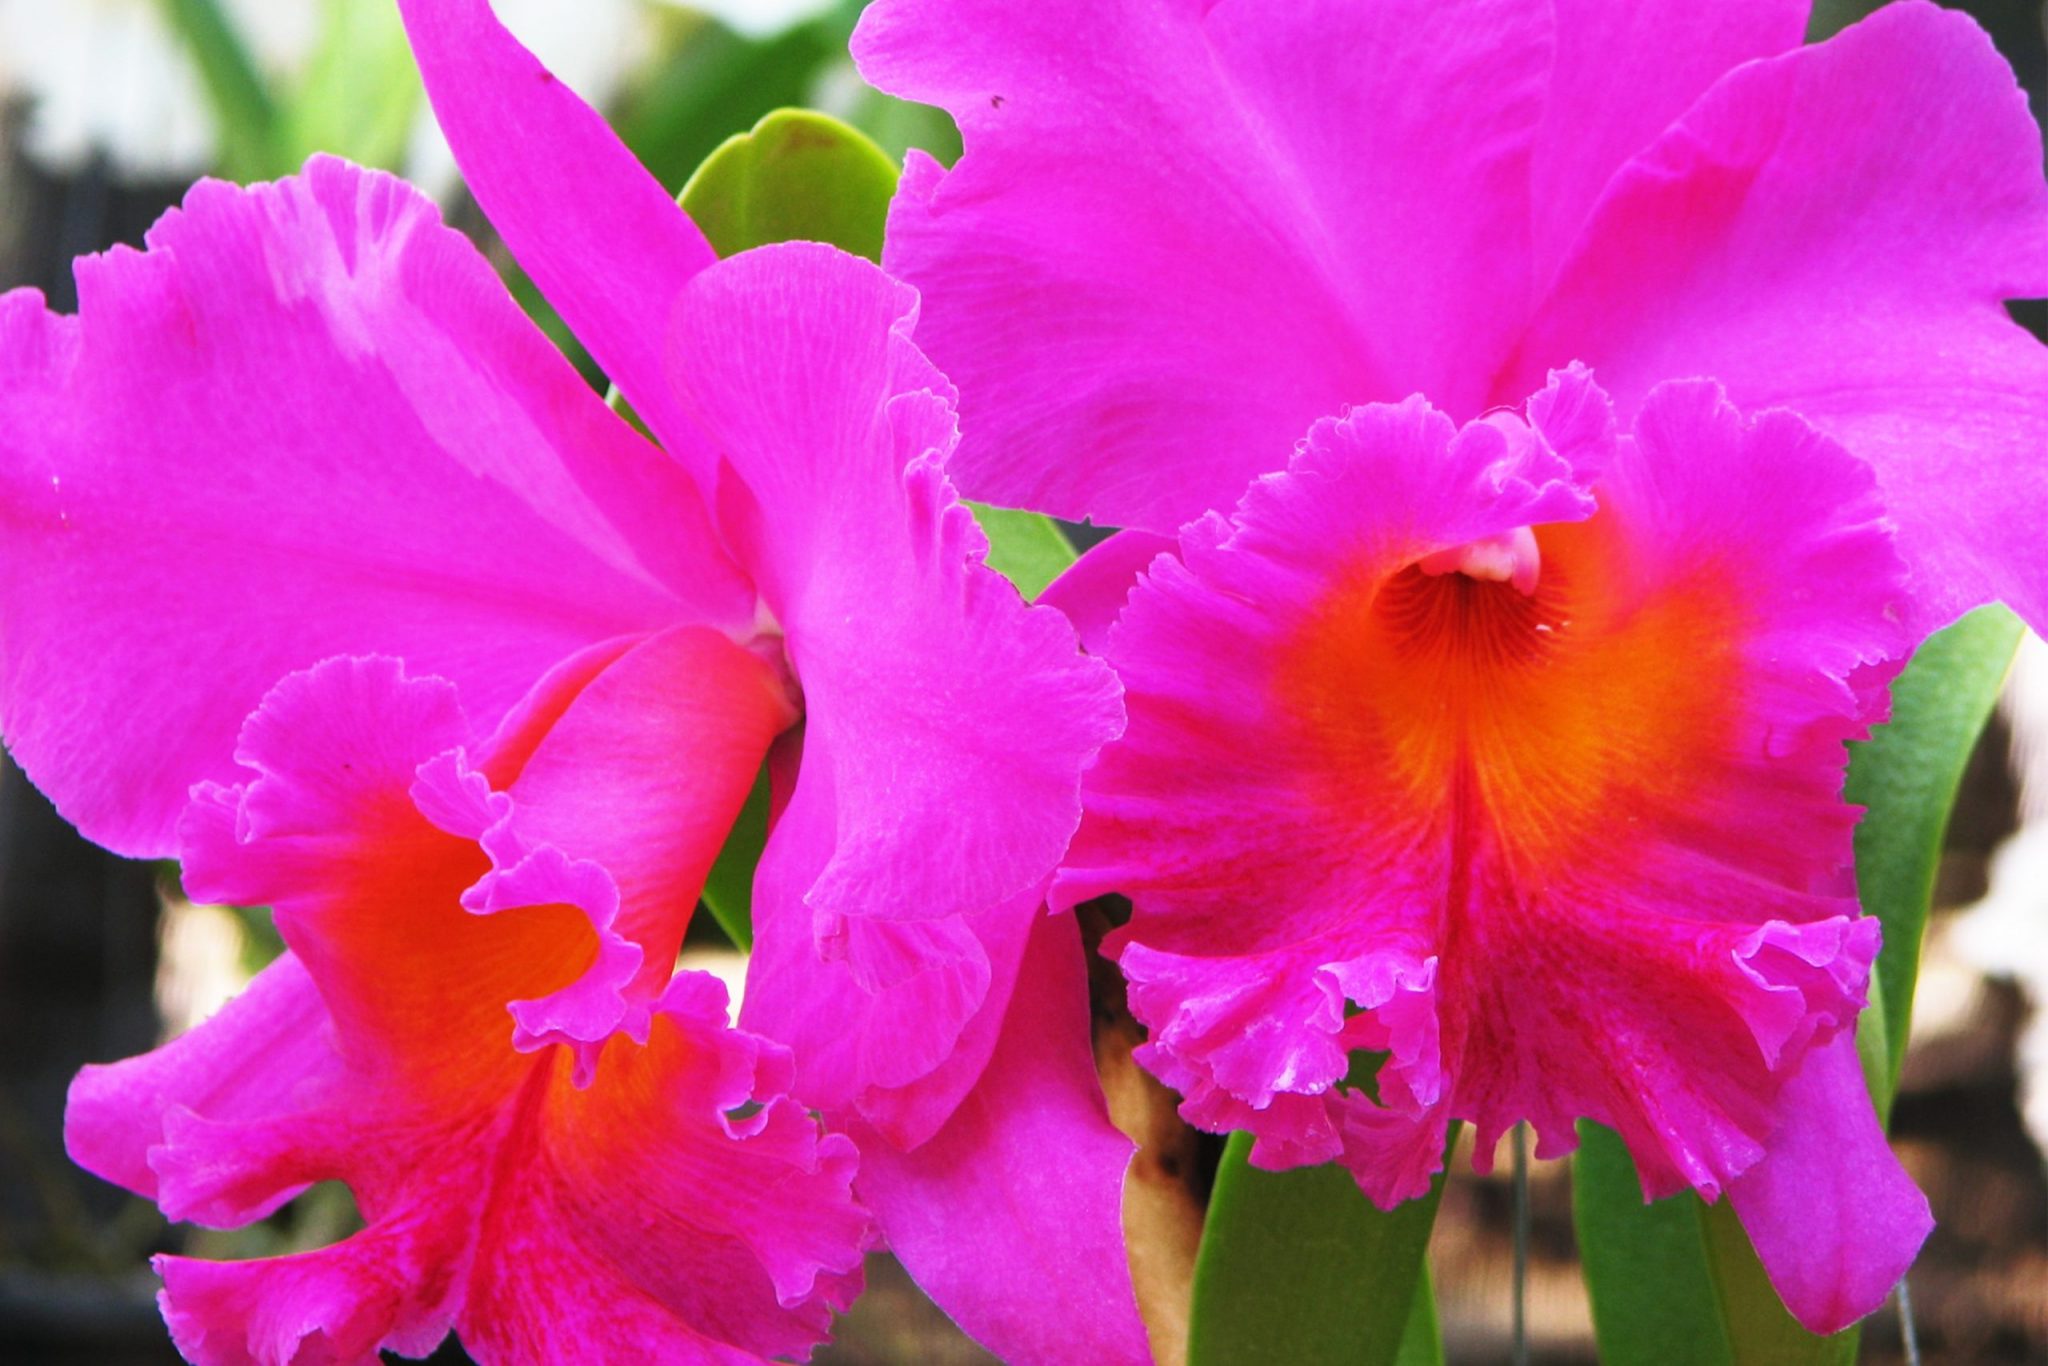 ▷ Orquídea Cattleya [Megaguía de información y cuidados necesarios]